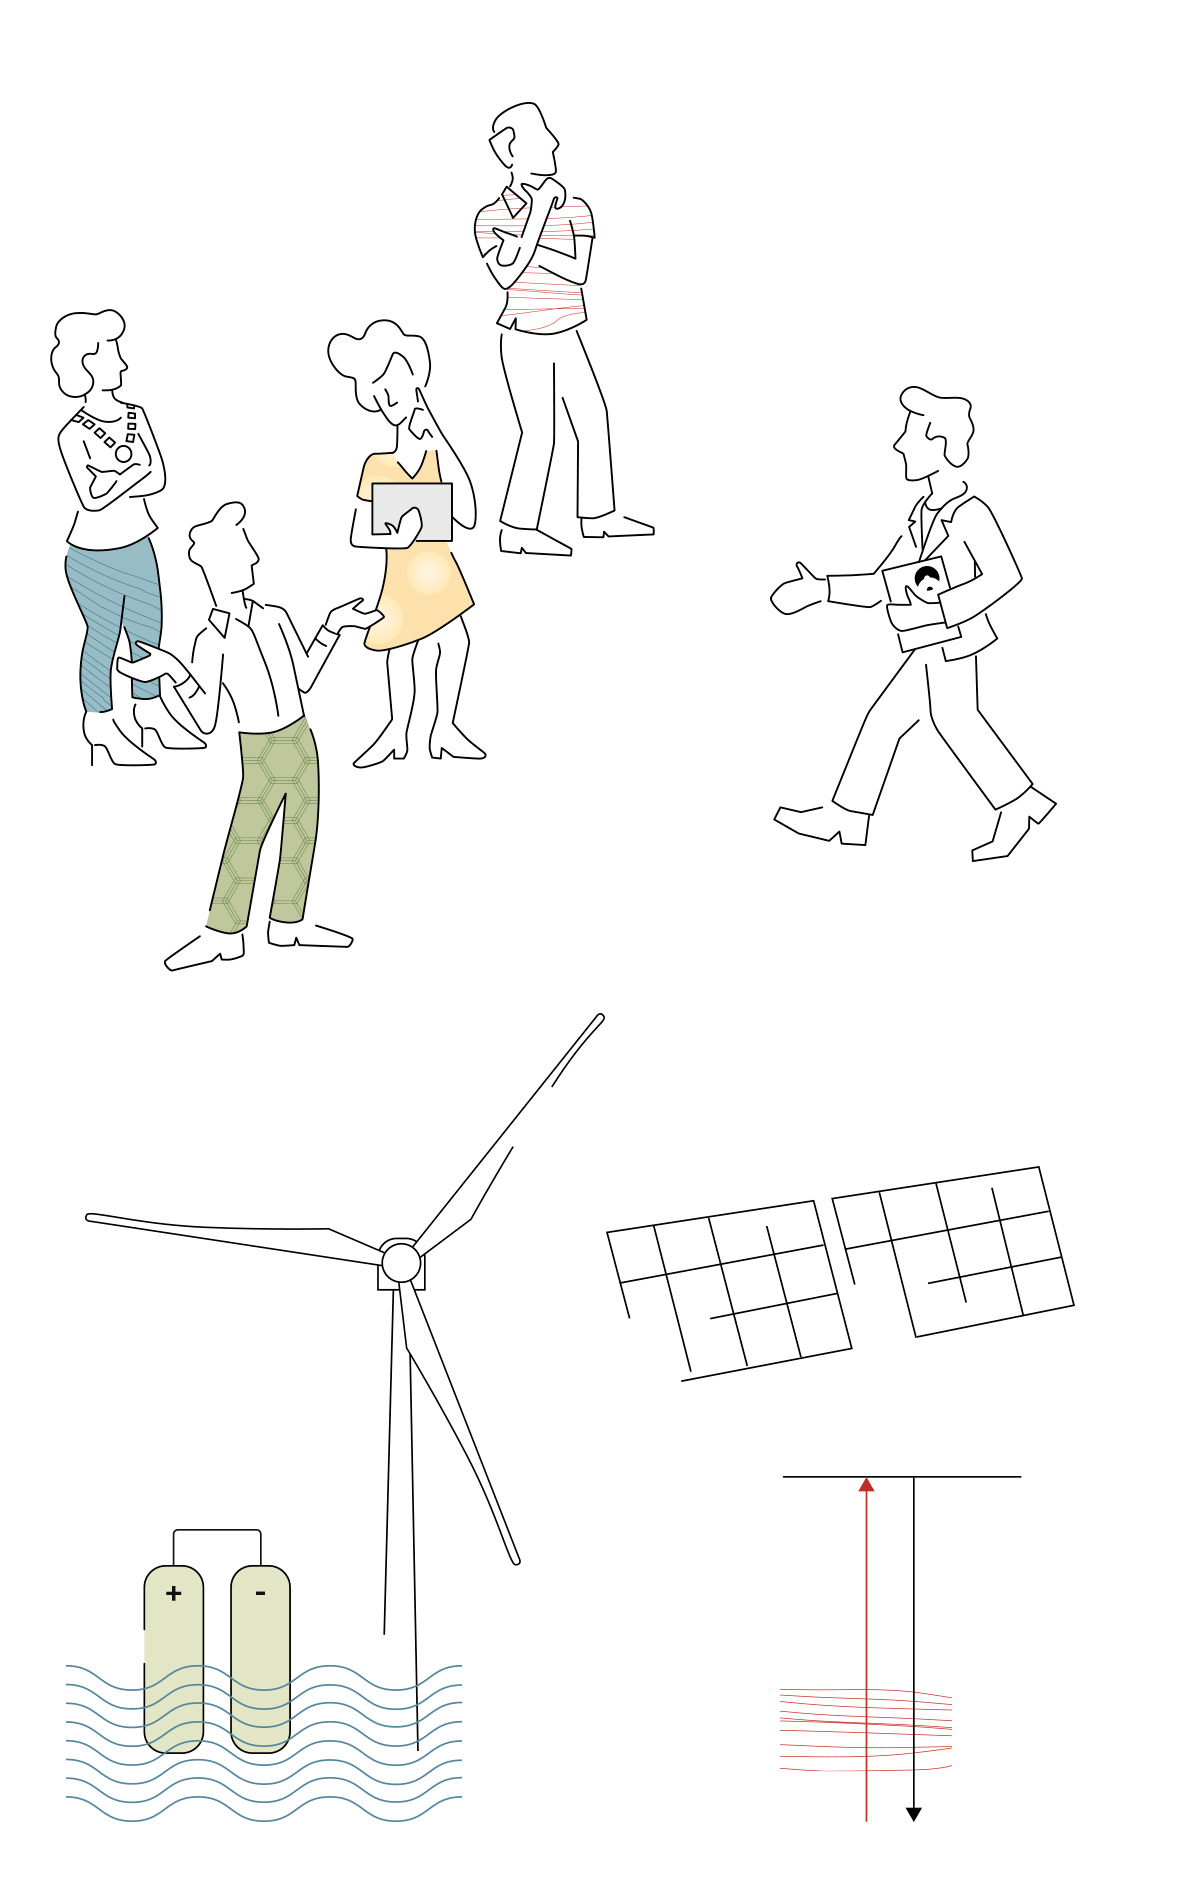 illustratie systeemintegratie duurzame energie Pondera Consult